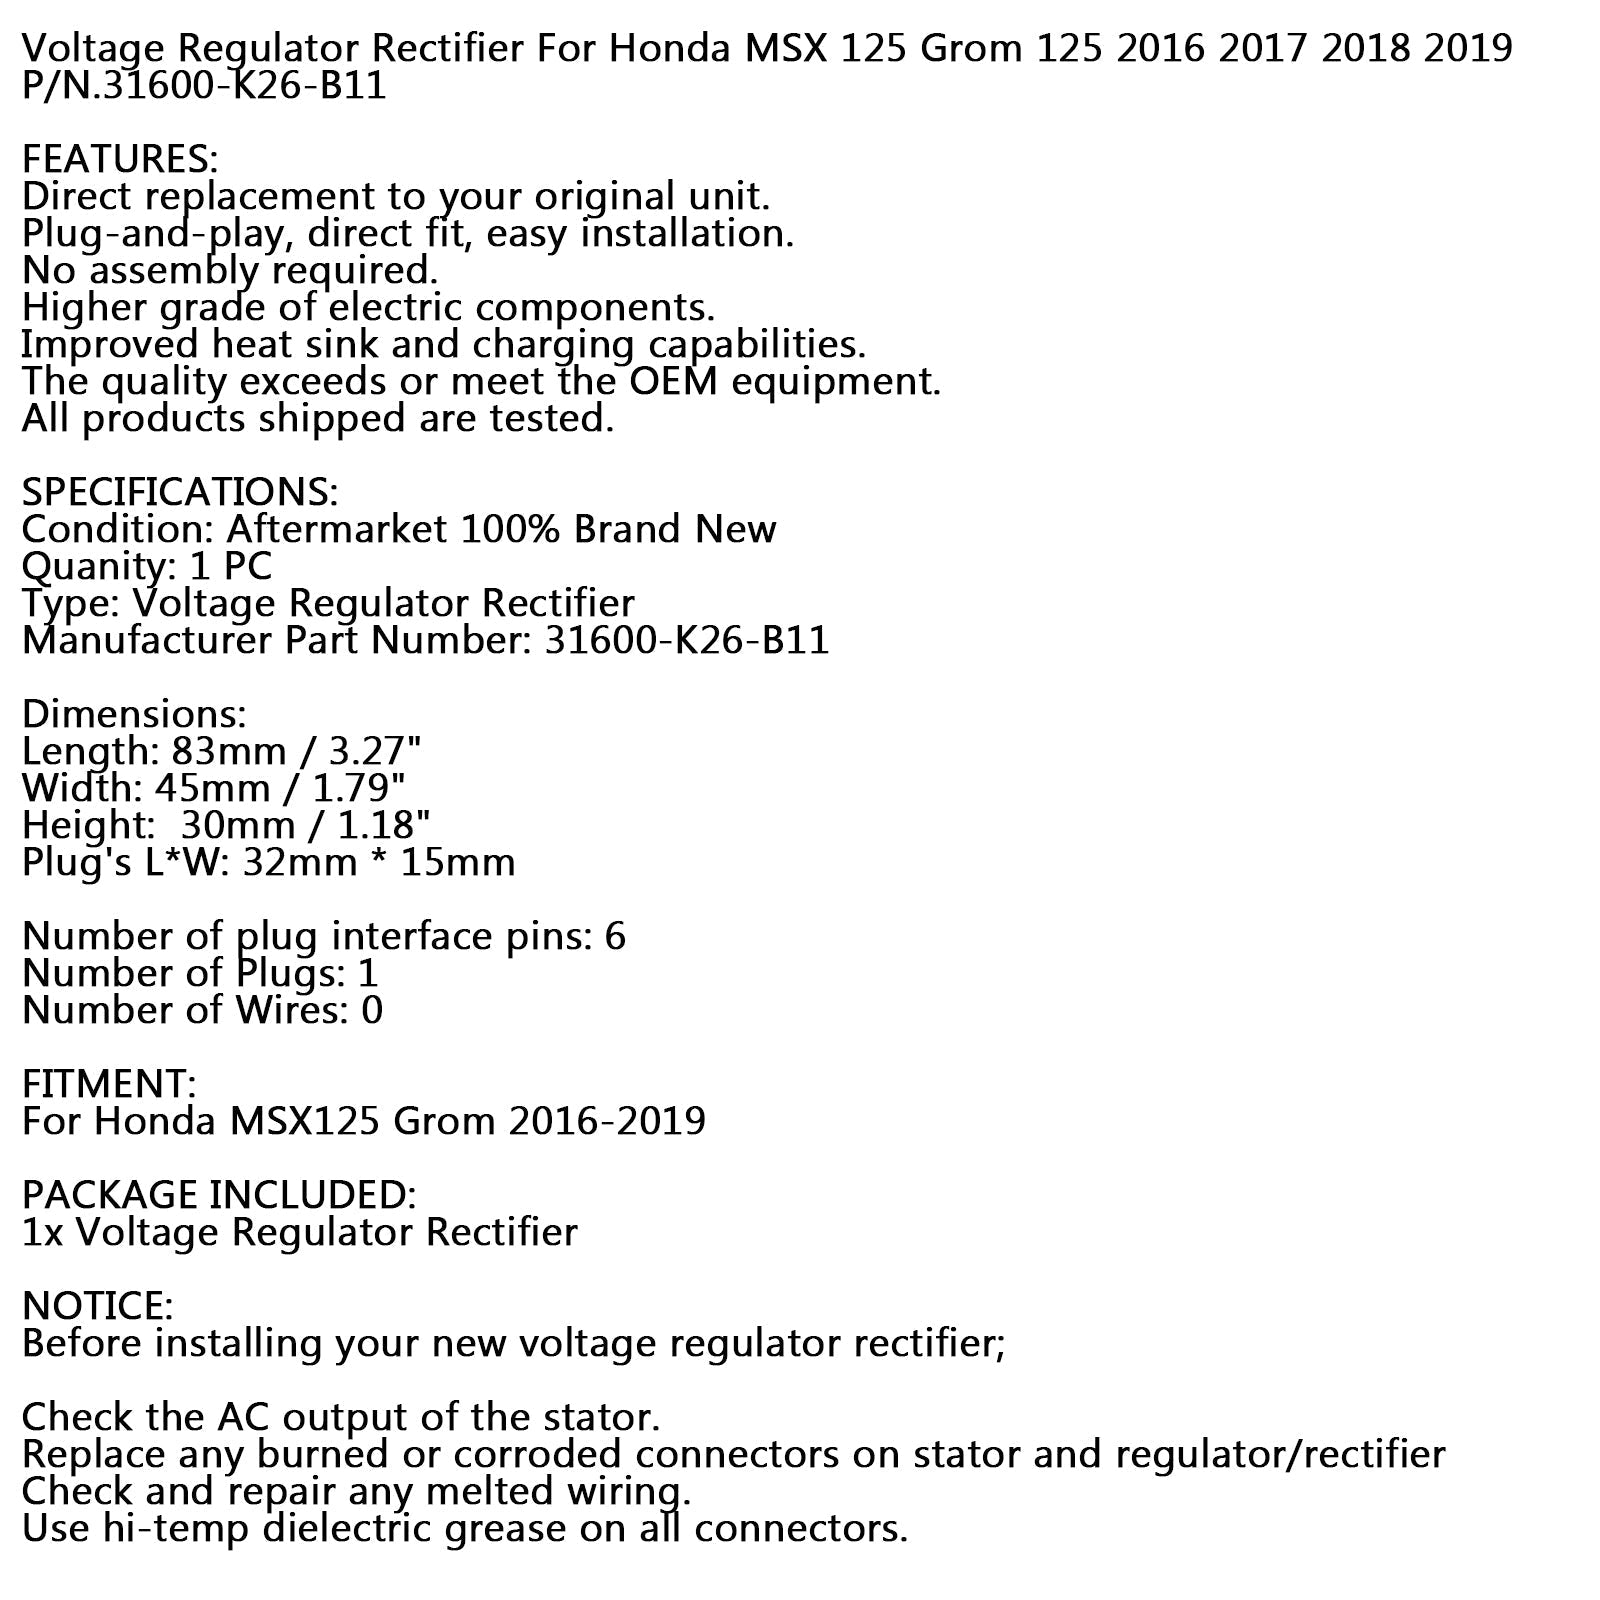 Régulateur redresseur de tension pour Honda MSX125 Grom 125 2016-2019 31600-K26-B11 générique